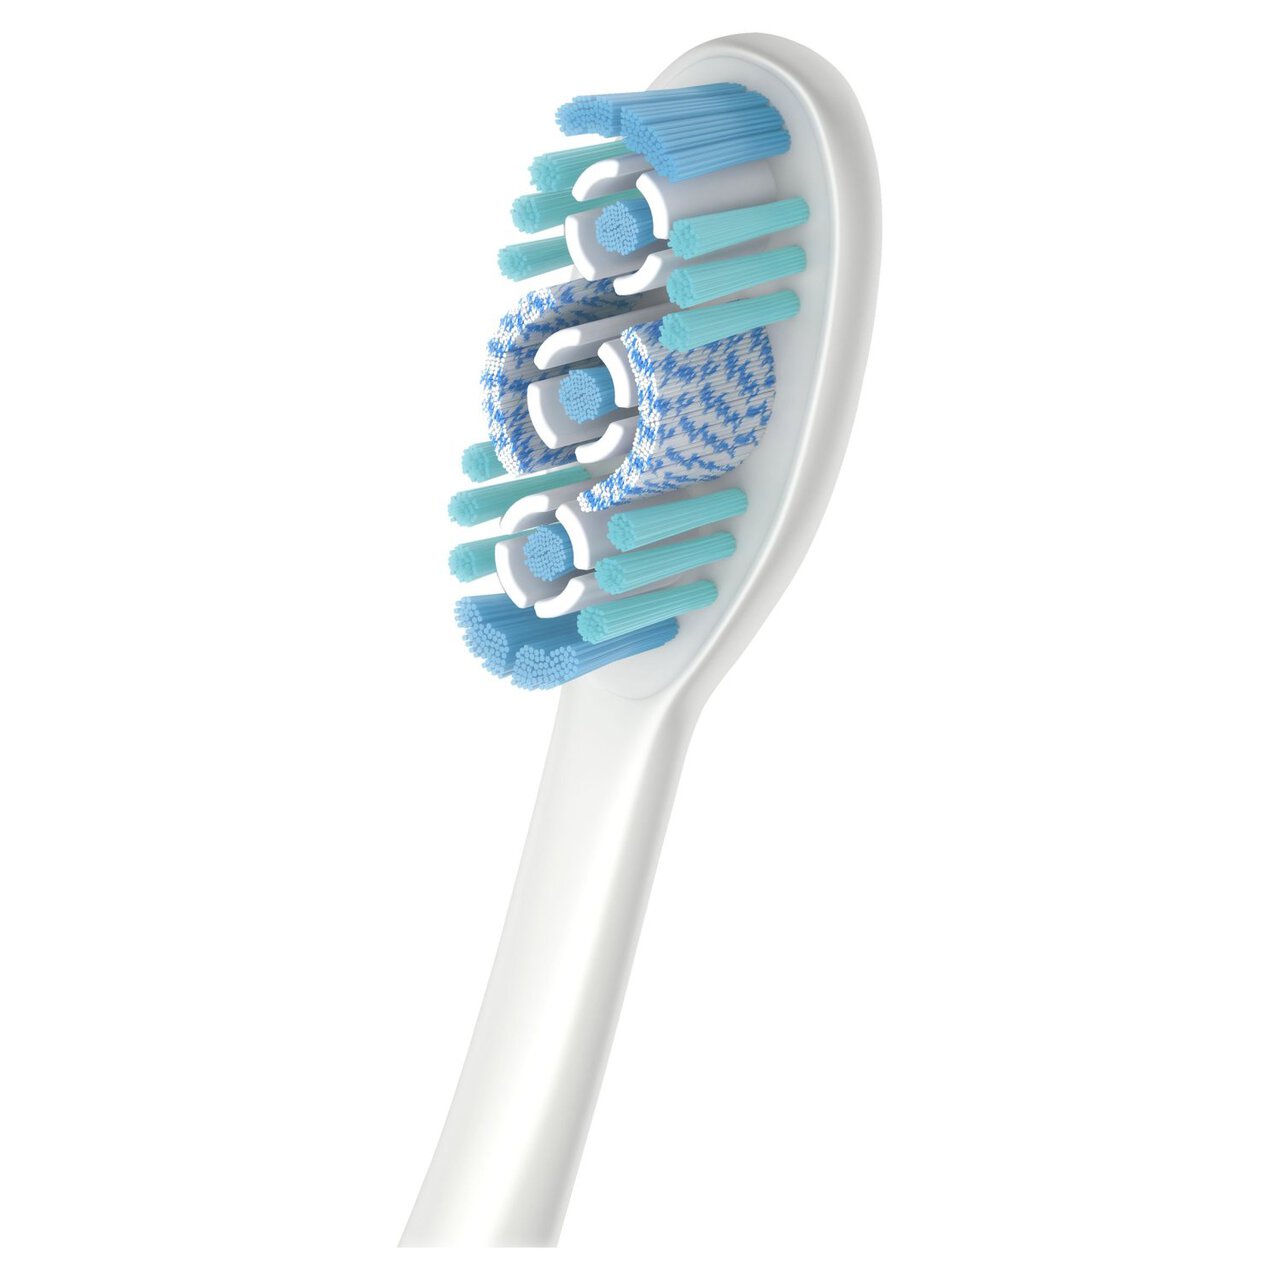 Colgate 360 Max White One Medium Toothbrush